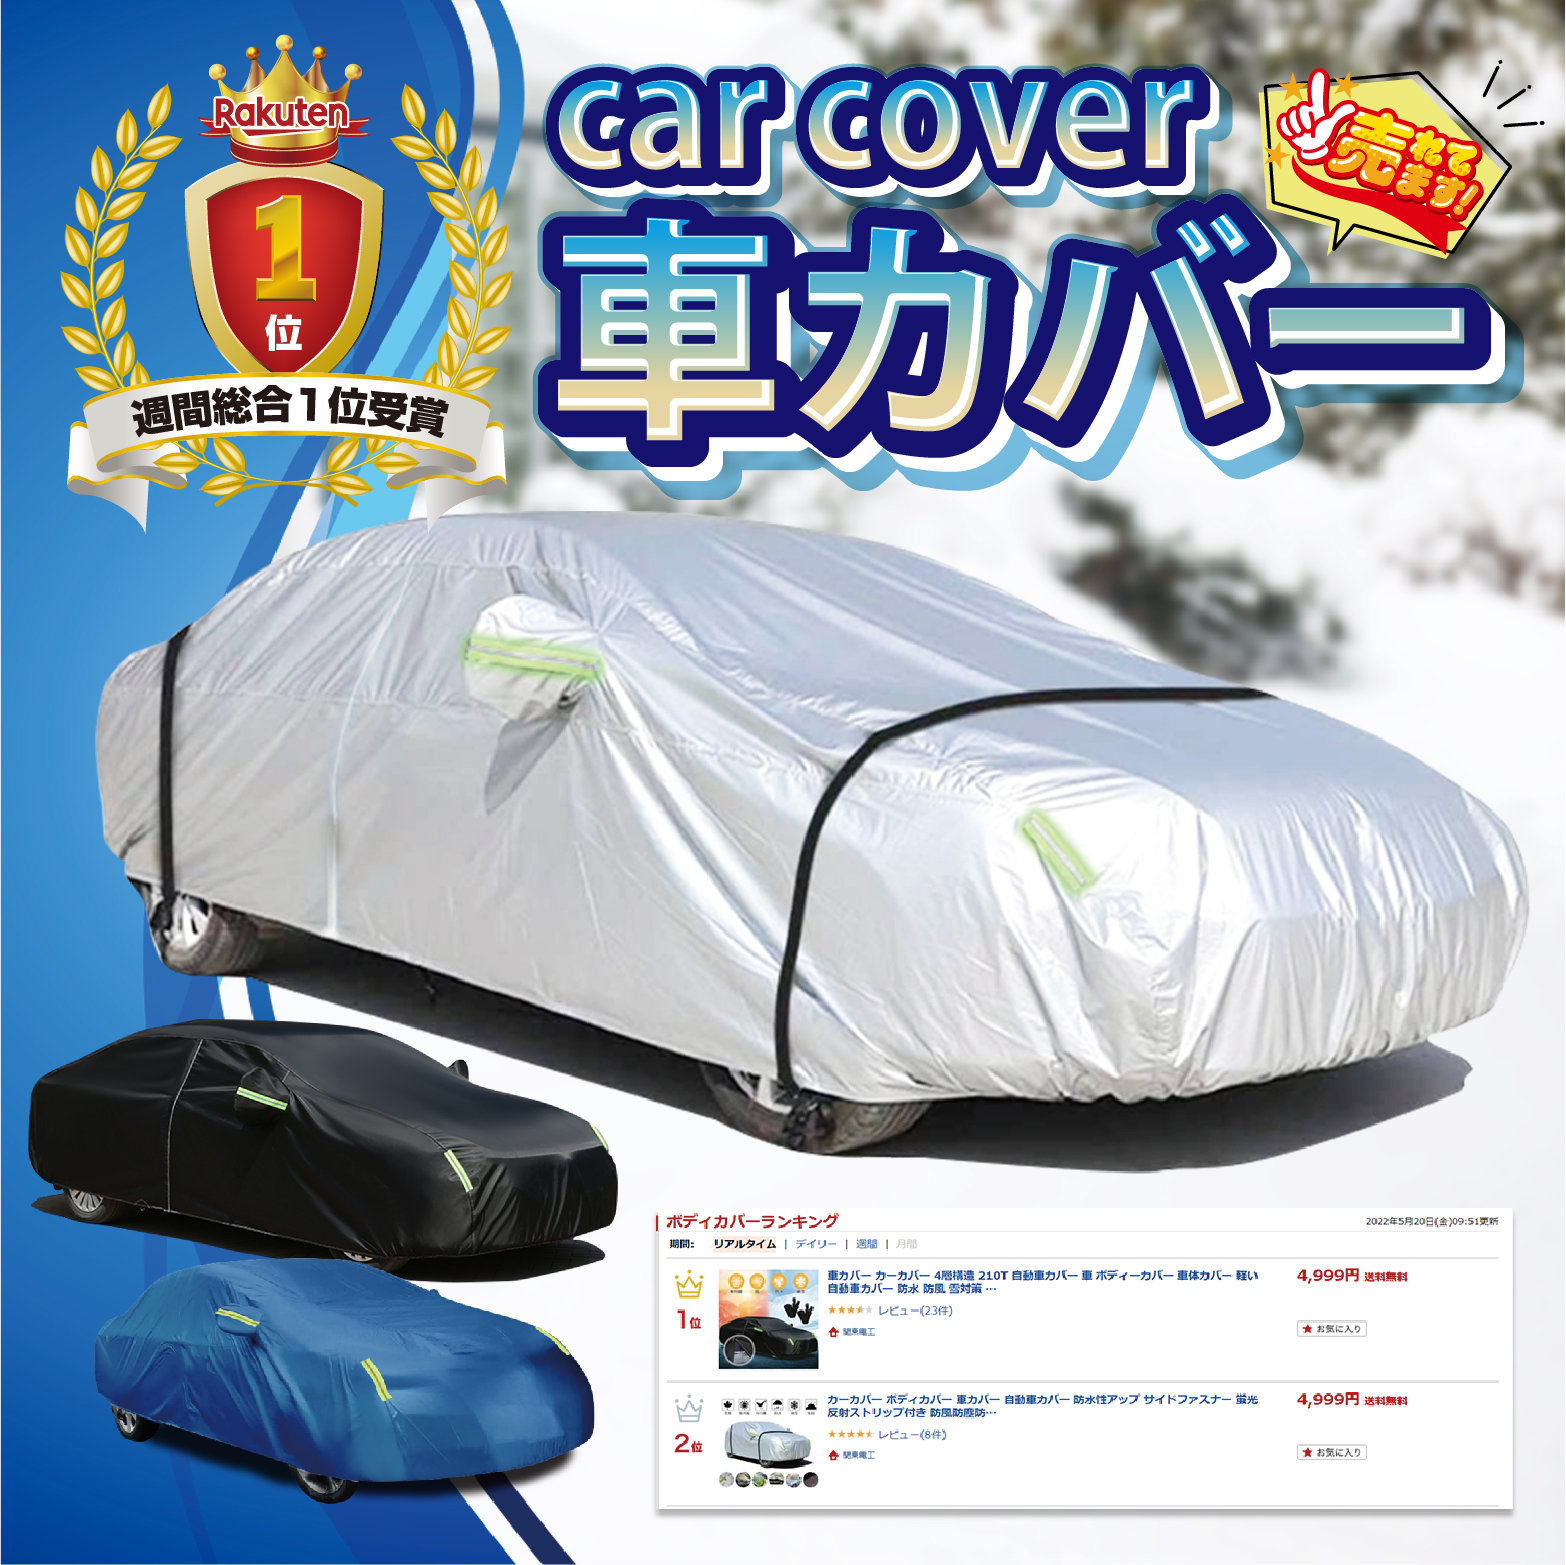 車 カバー 車体 カーカバー 防水 雪 UV日焼け セダン対応 防水 収納袋